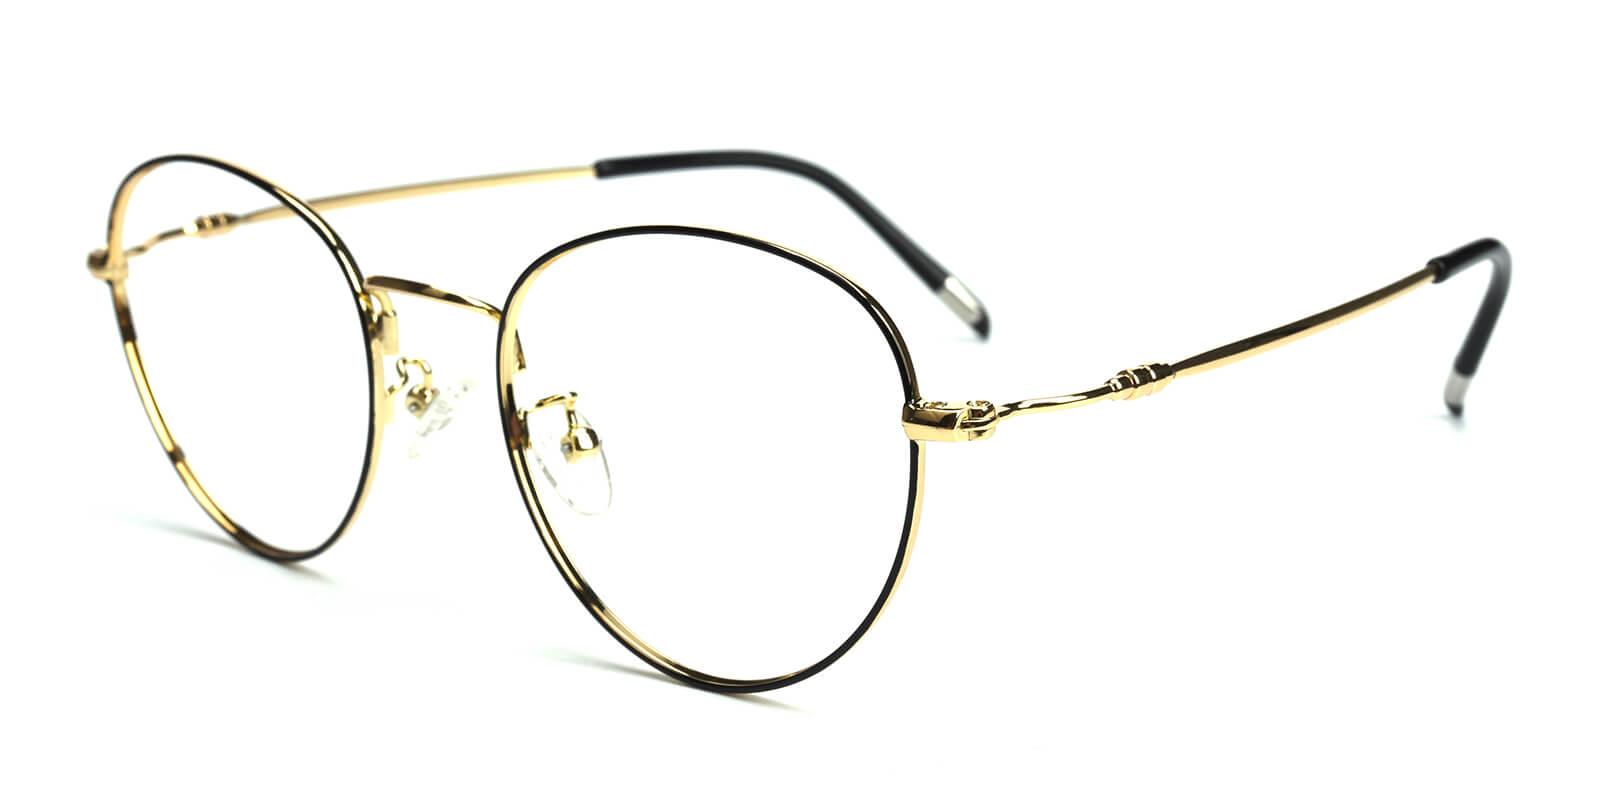 Sadie-Multicolor-Round-Metal-Eyeglasses-detail